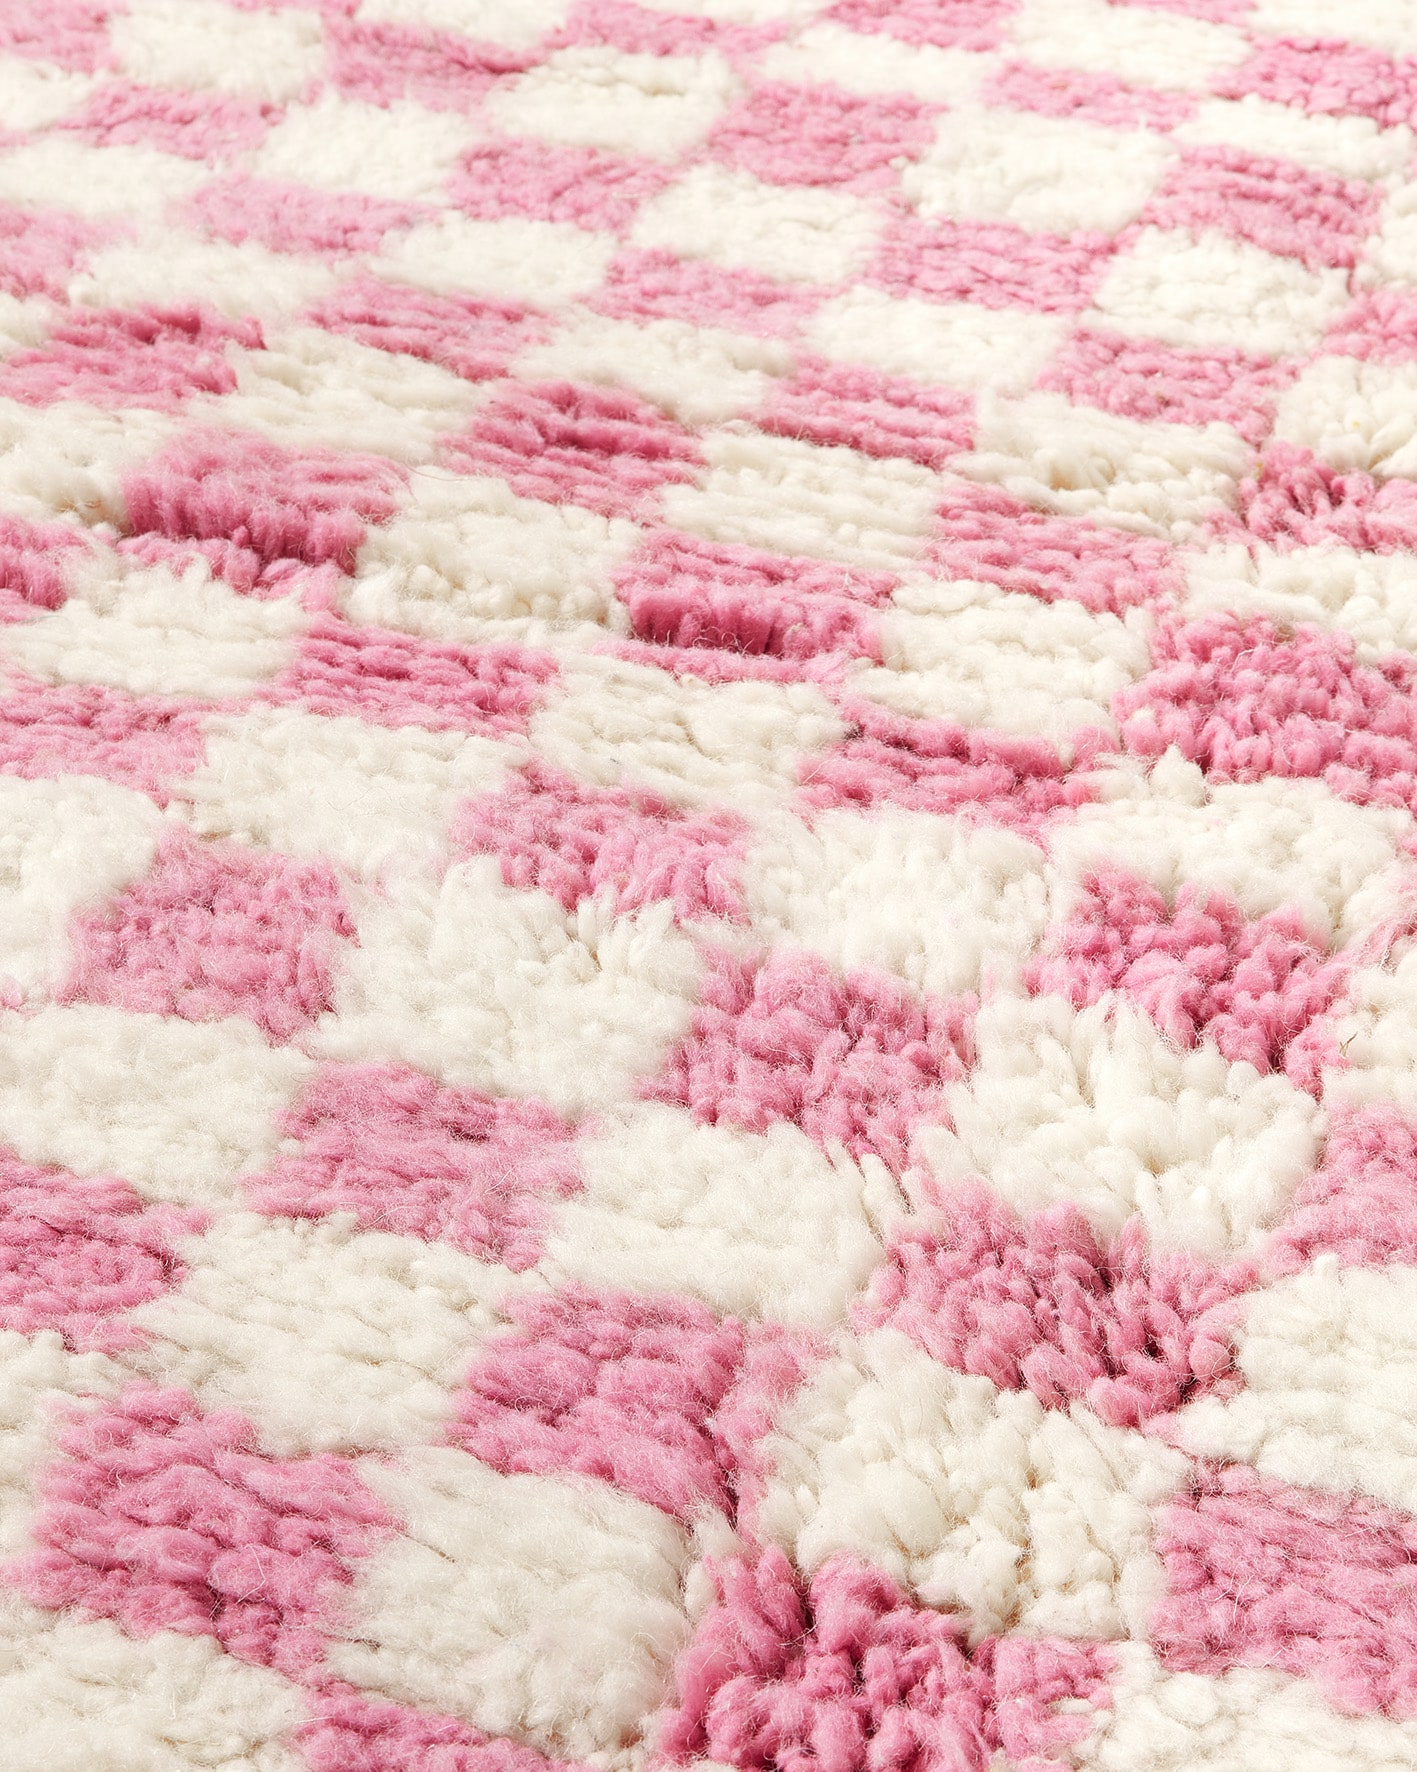 Pink checkered rug, close